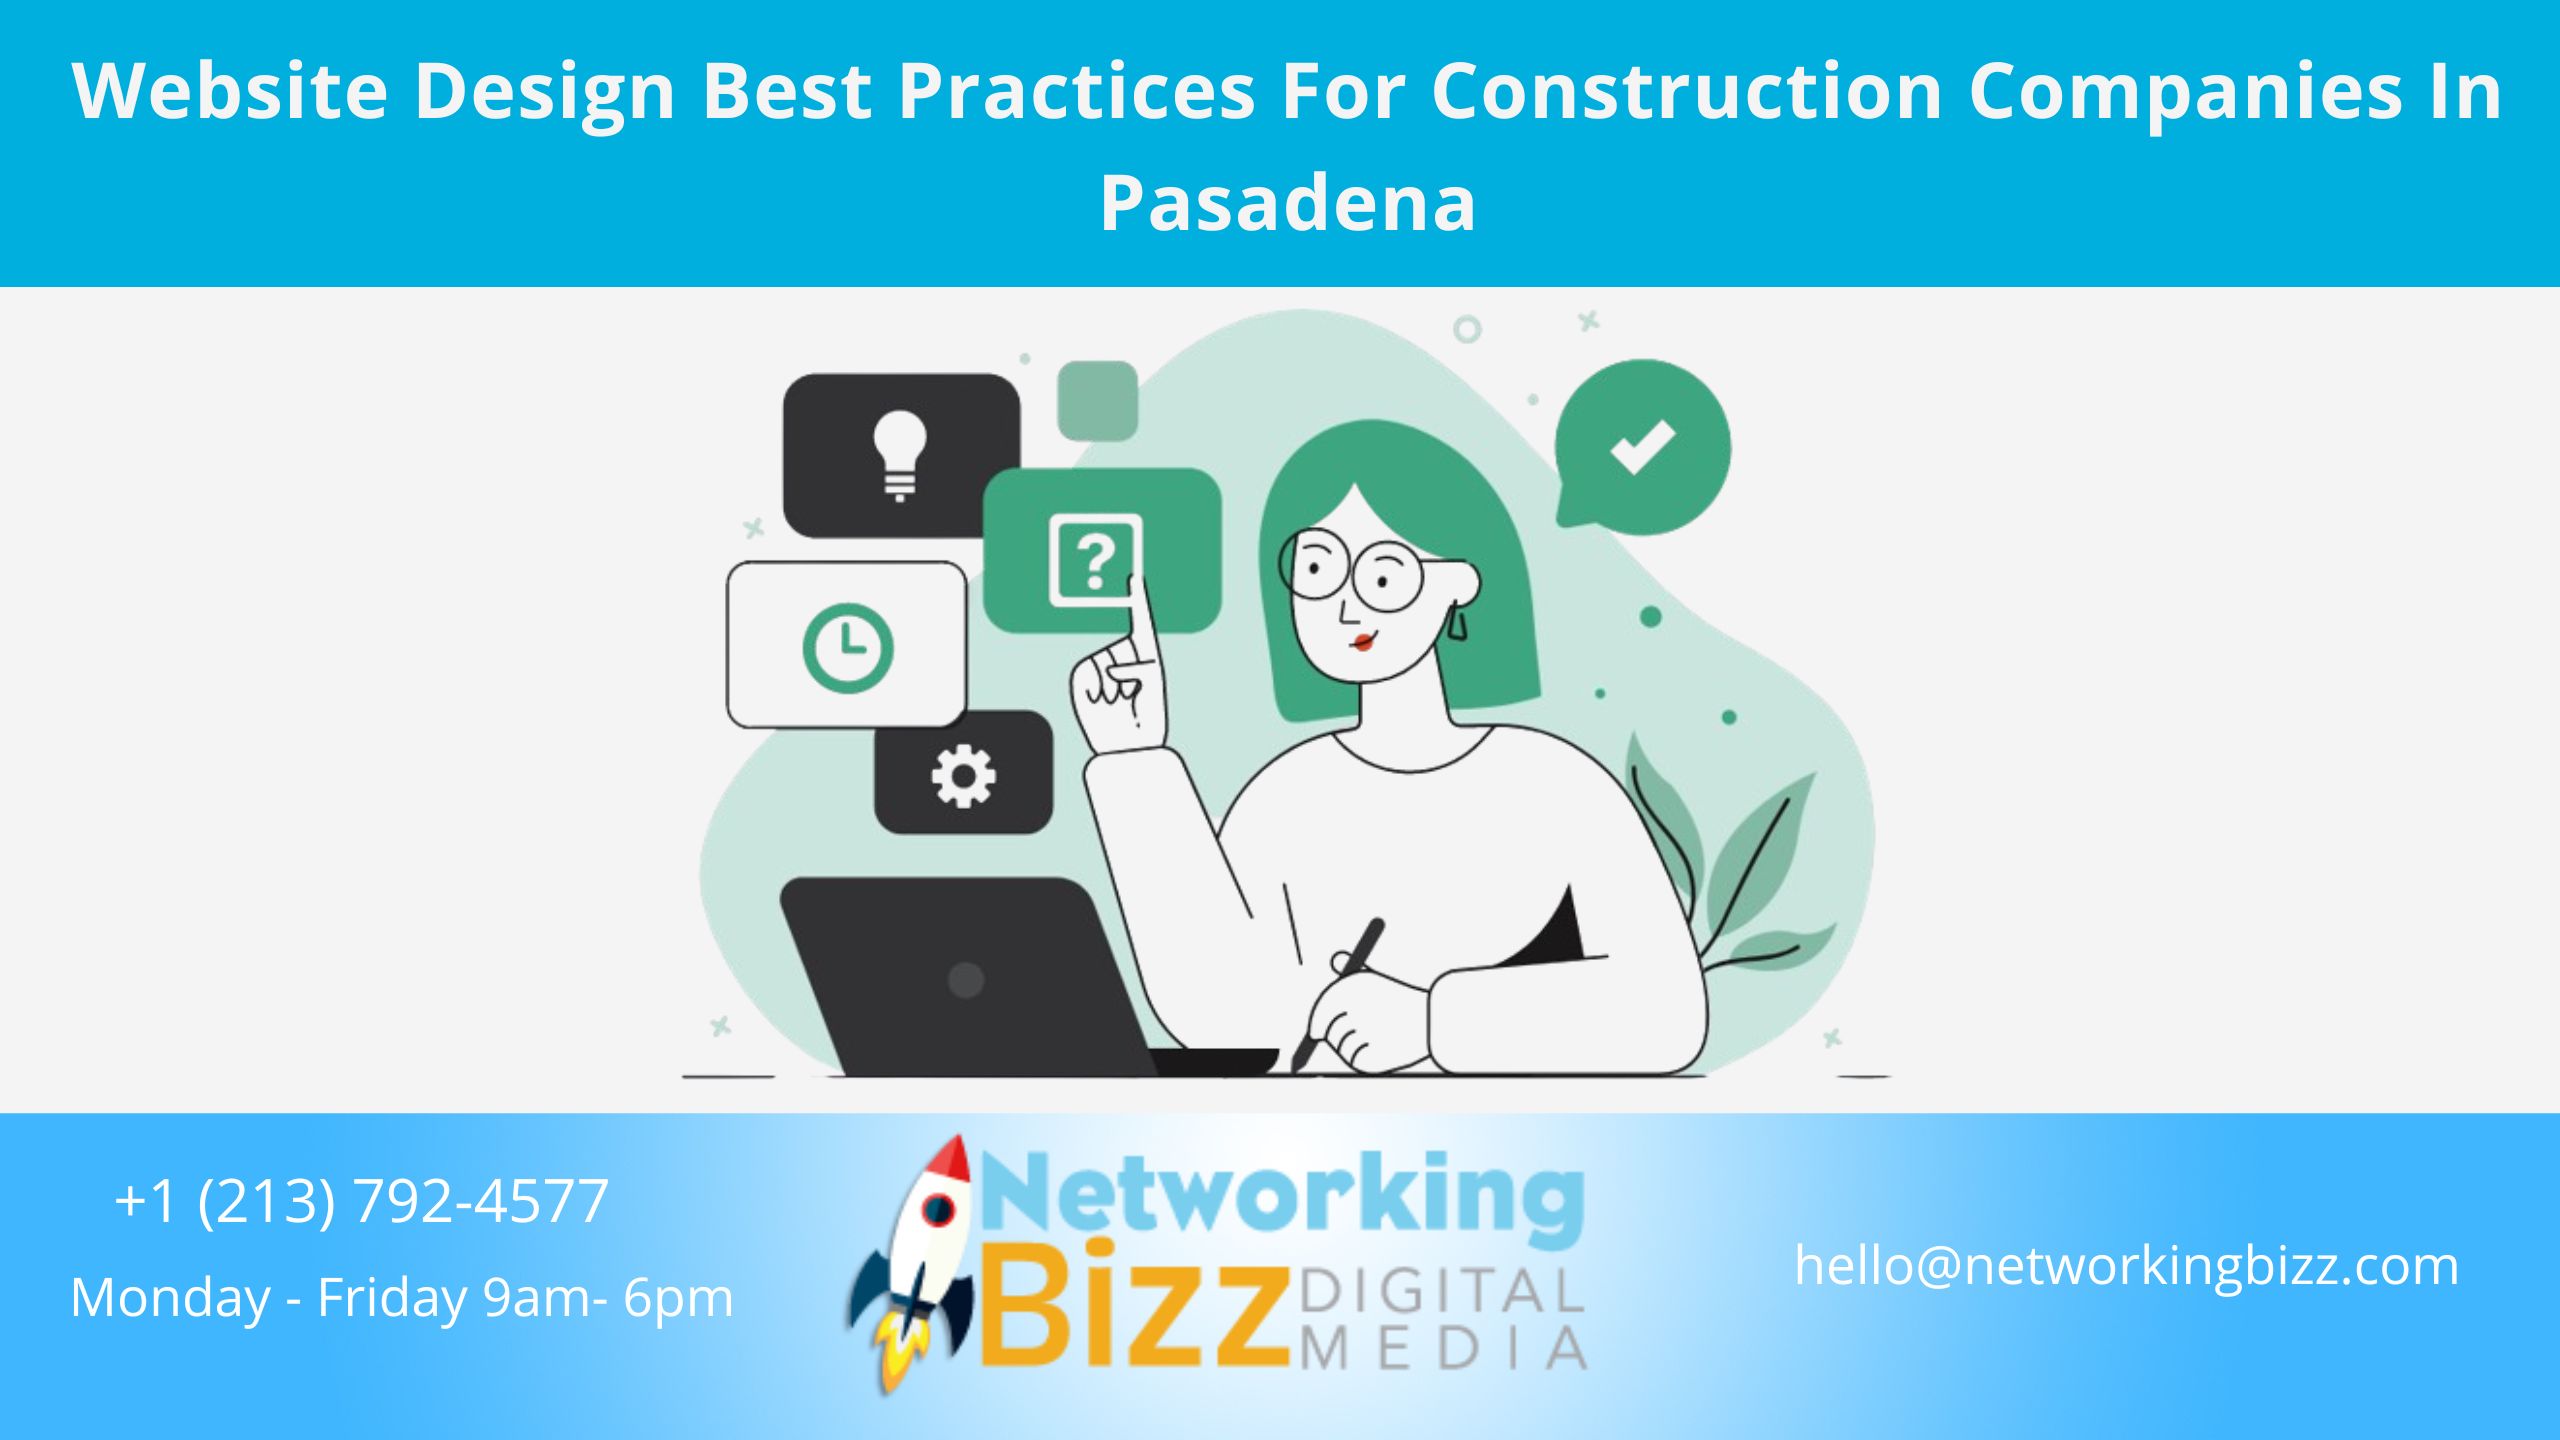 Website Design Best Practices For Construction Companies In Pasadena